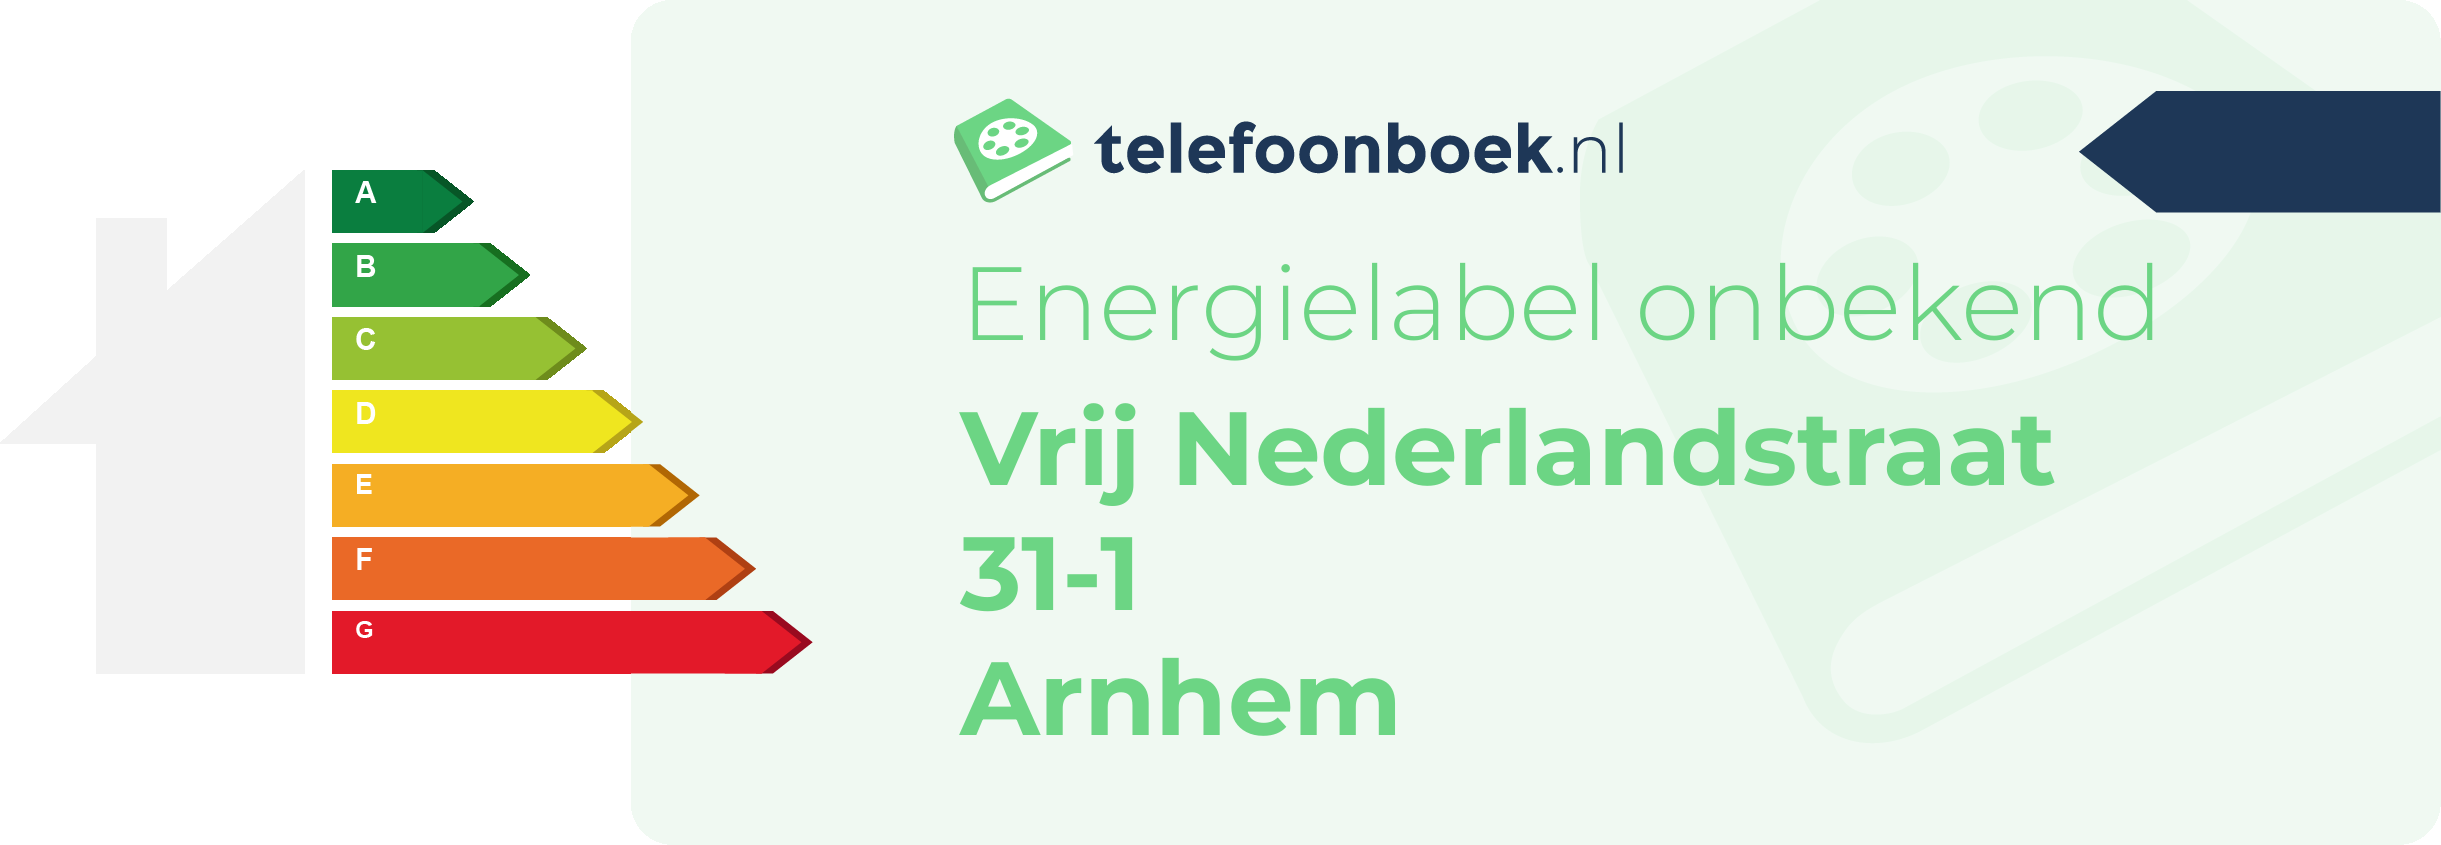 Energielabel Vrij Nederlandstraat 31-1 Arnhem